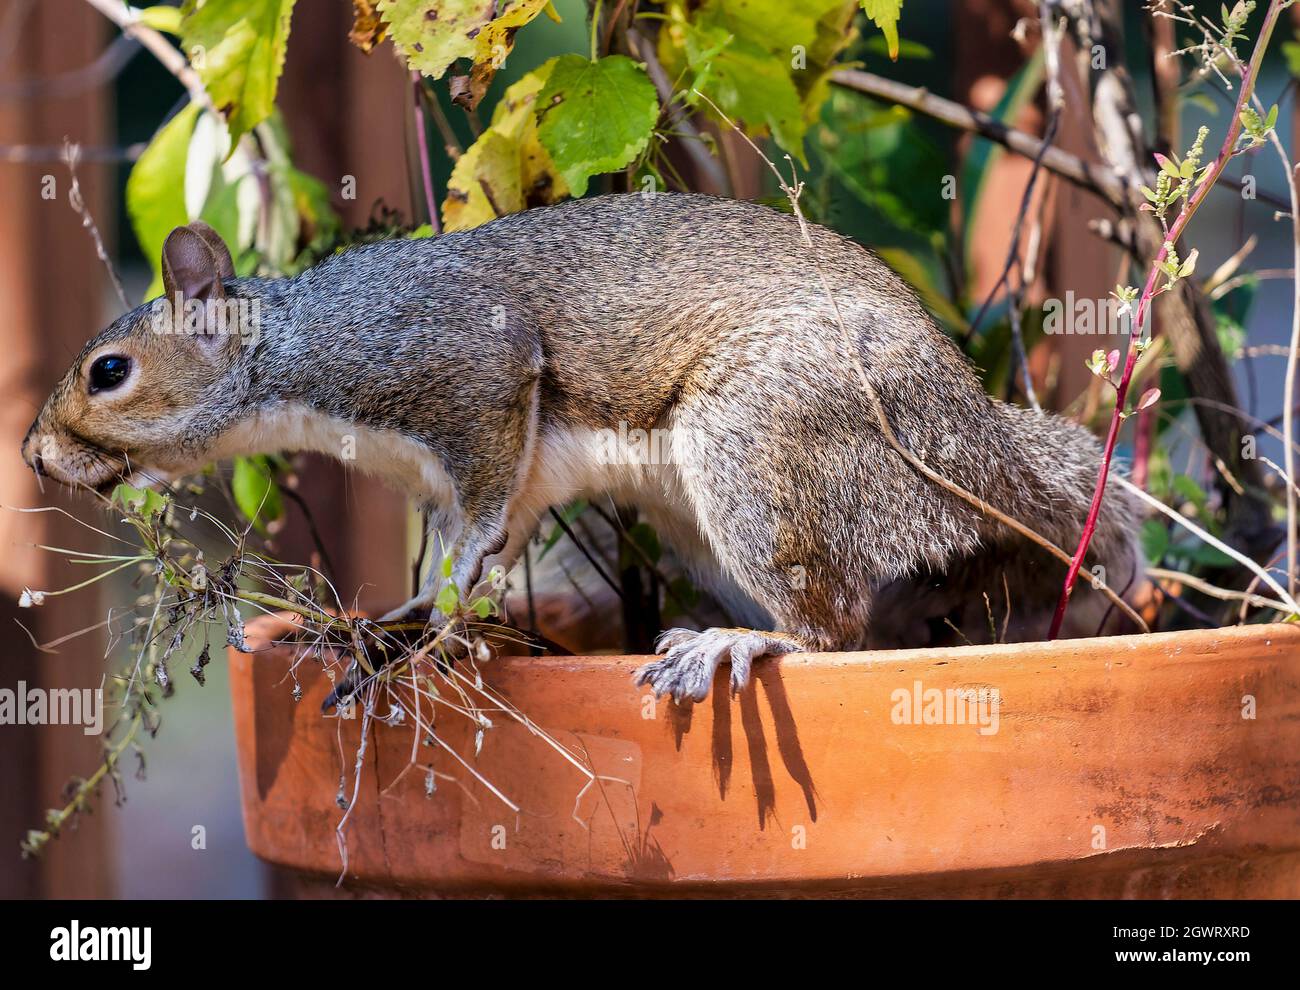 Lo scoiattolo si prepara a saltare da una pentola di fiori Foto Stock